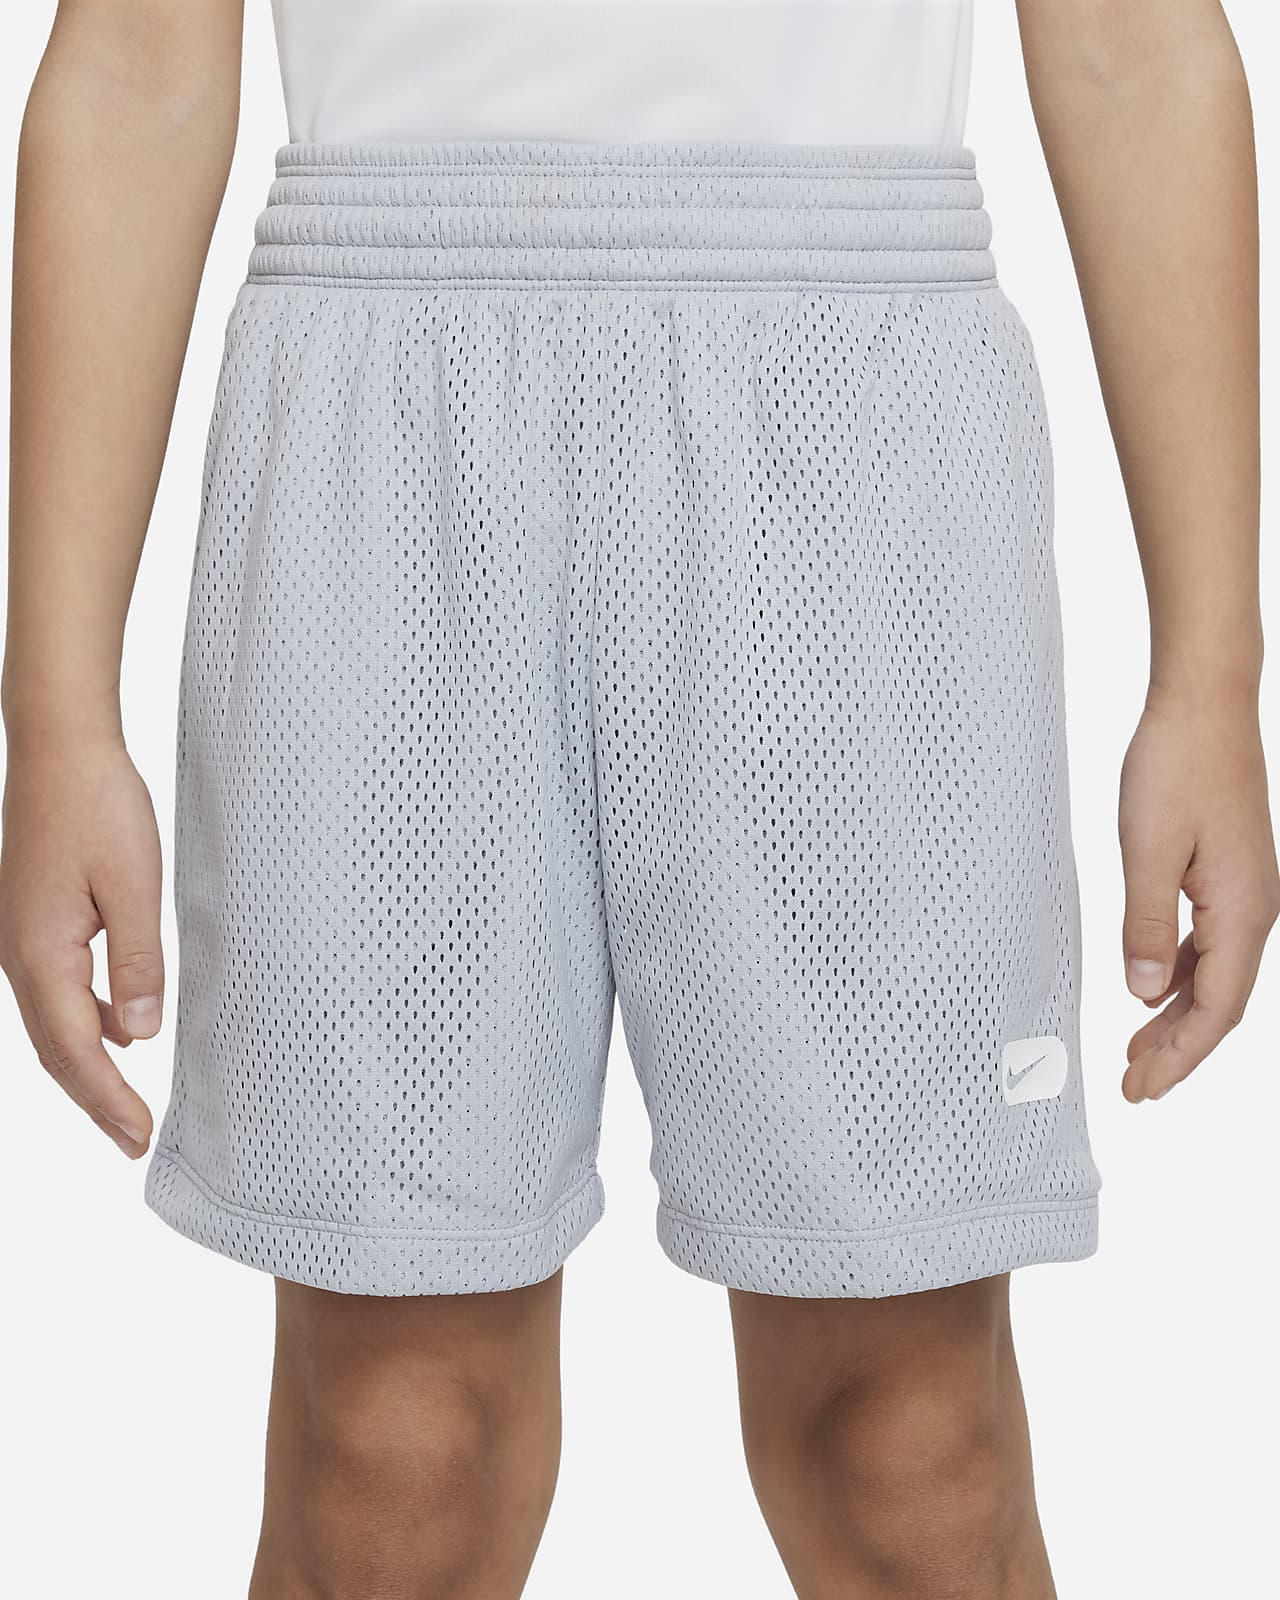 NIKE Dri-fit Boys'/girls' Running Training Short Shorts. Label Size: XL.  Black 